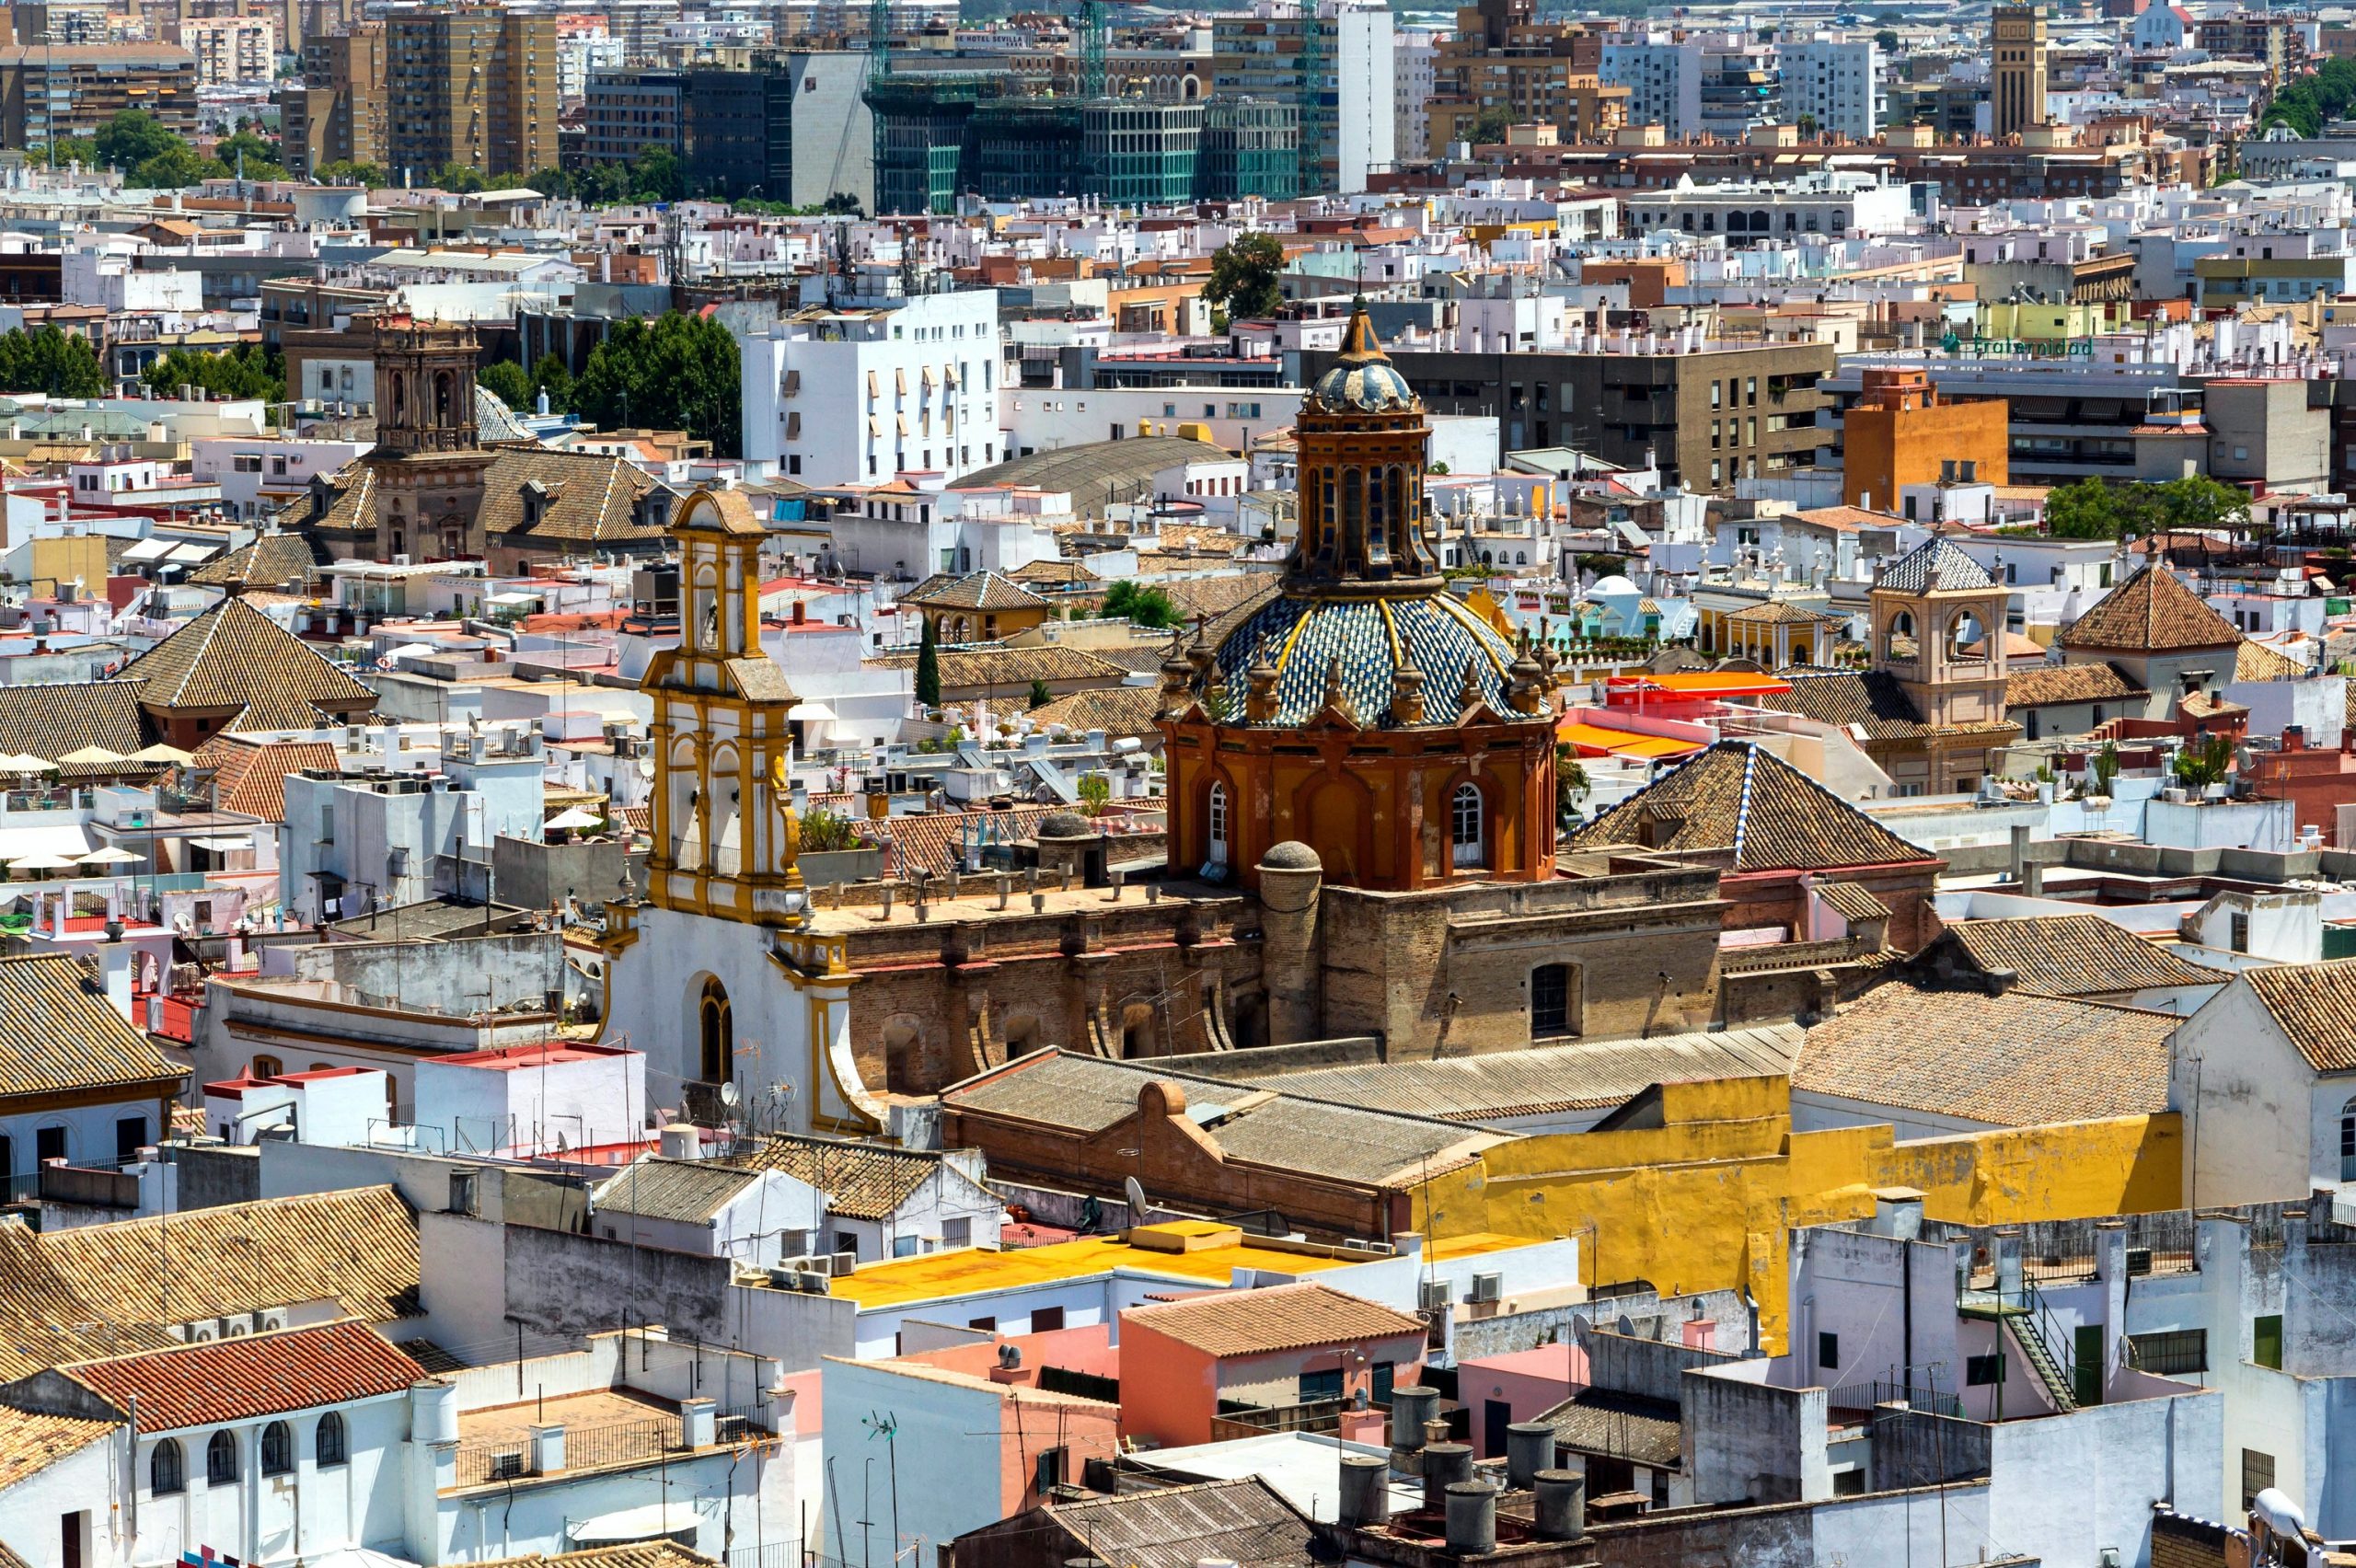 El cambio climático está convirtiendo la Sevilla española en un desierto, advierte un meteorólogo